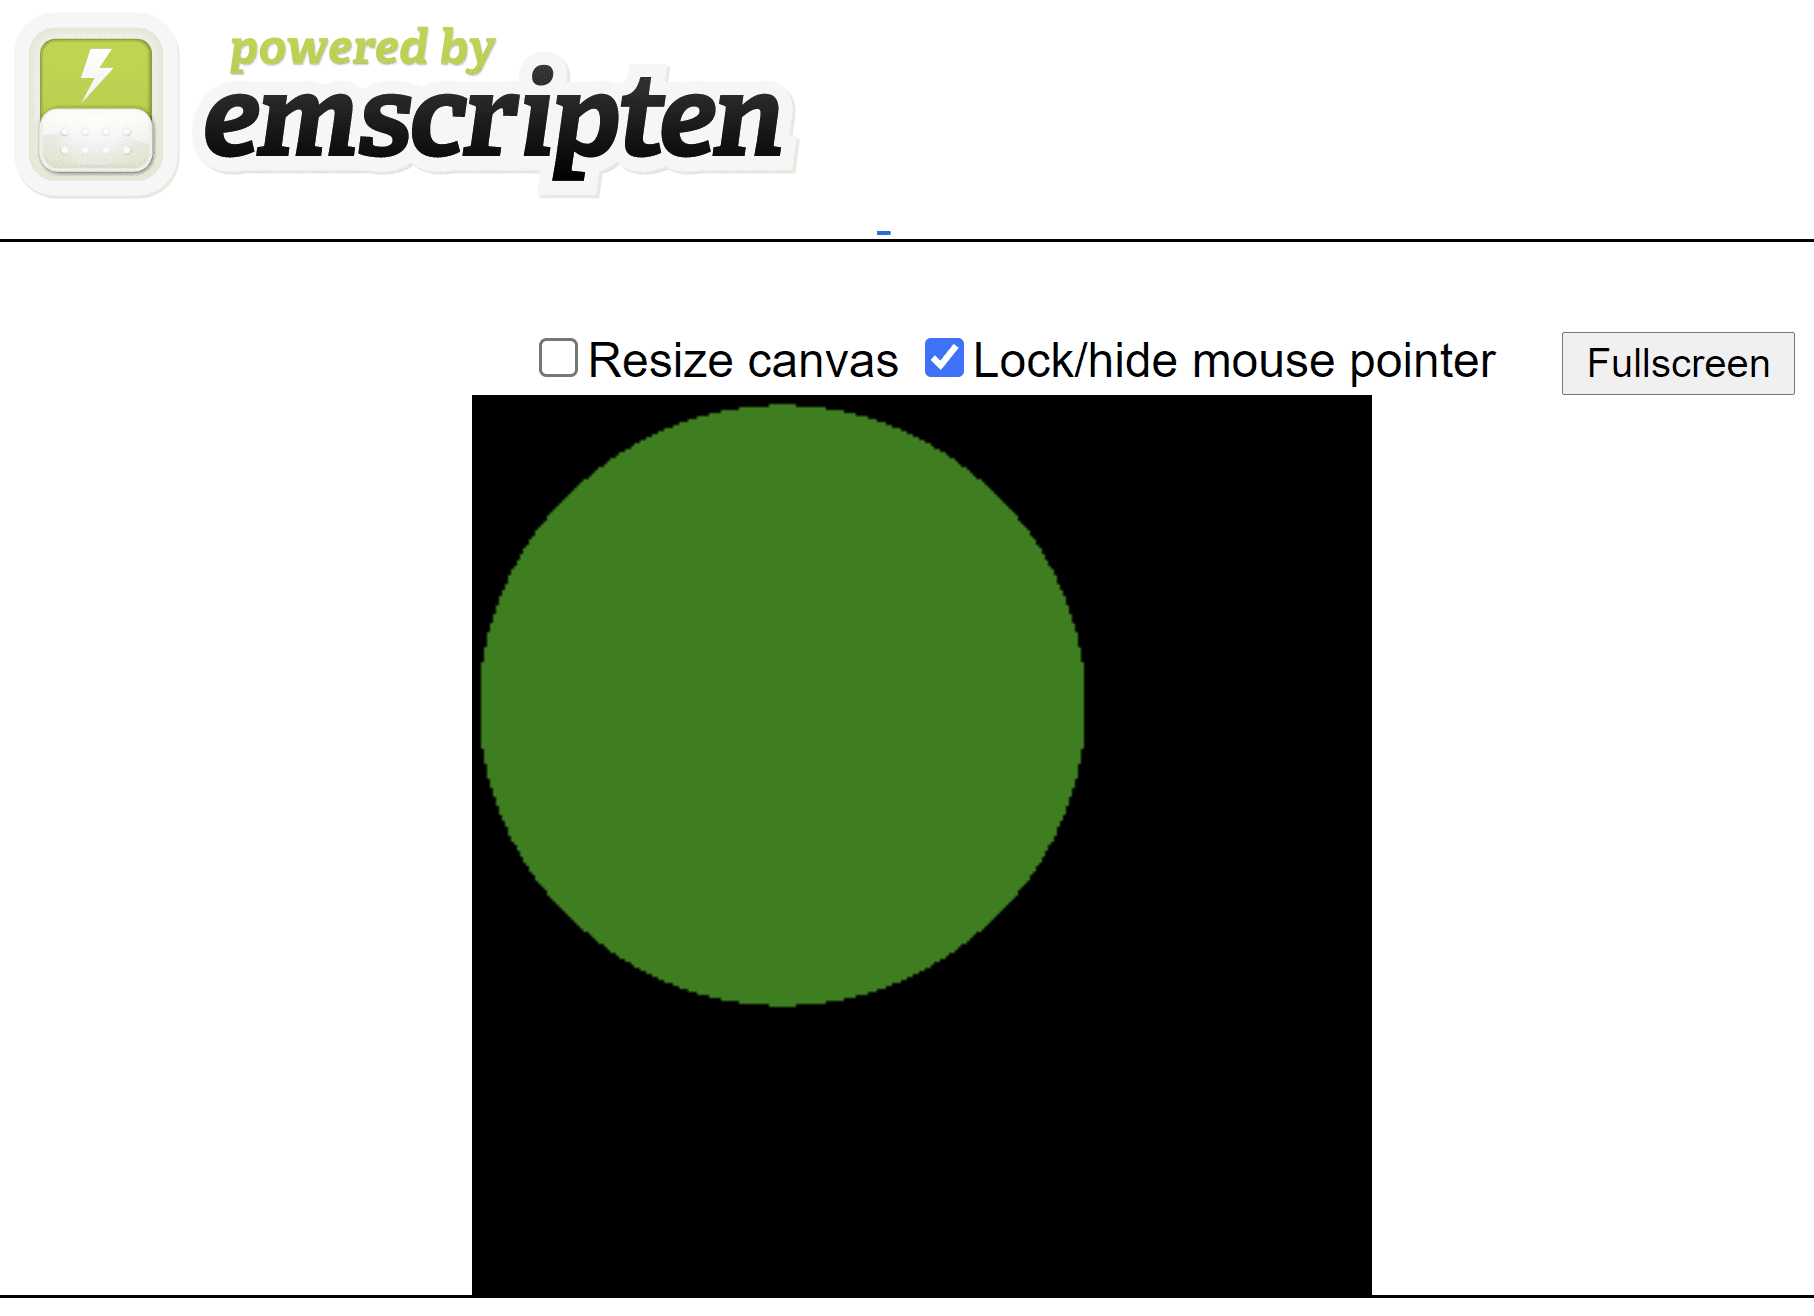 Pagina HTML generata da Emscripten che mostra un cerchio verde su una tela quadrata nera.